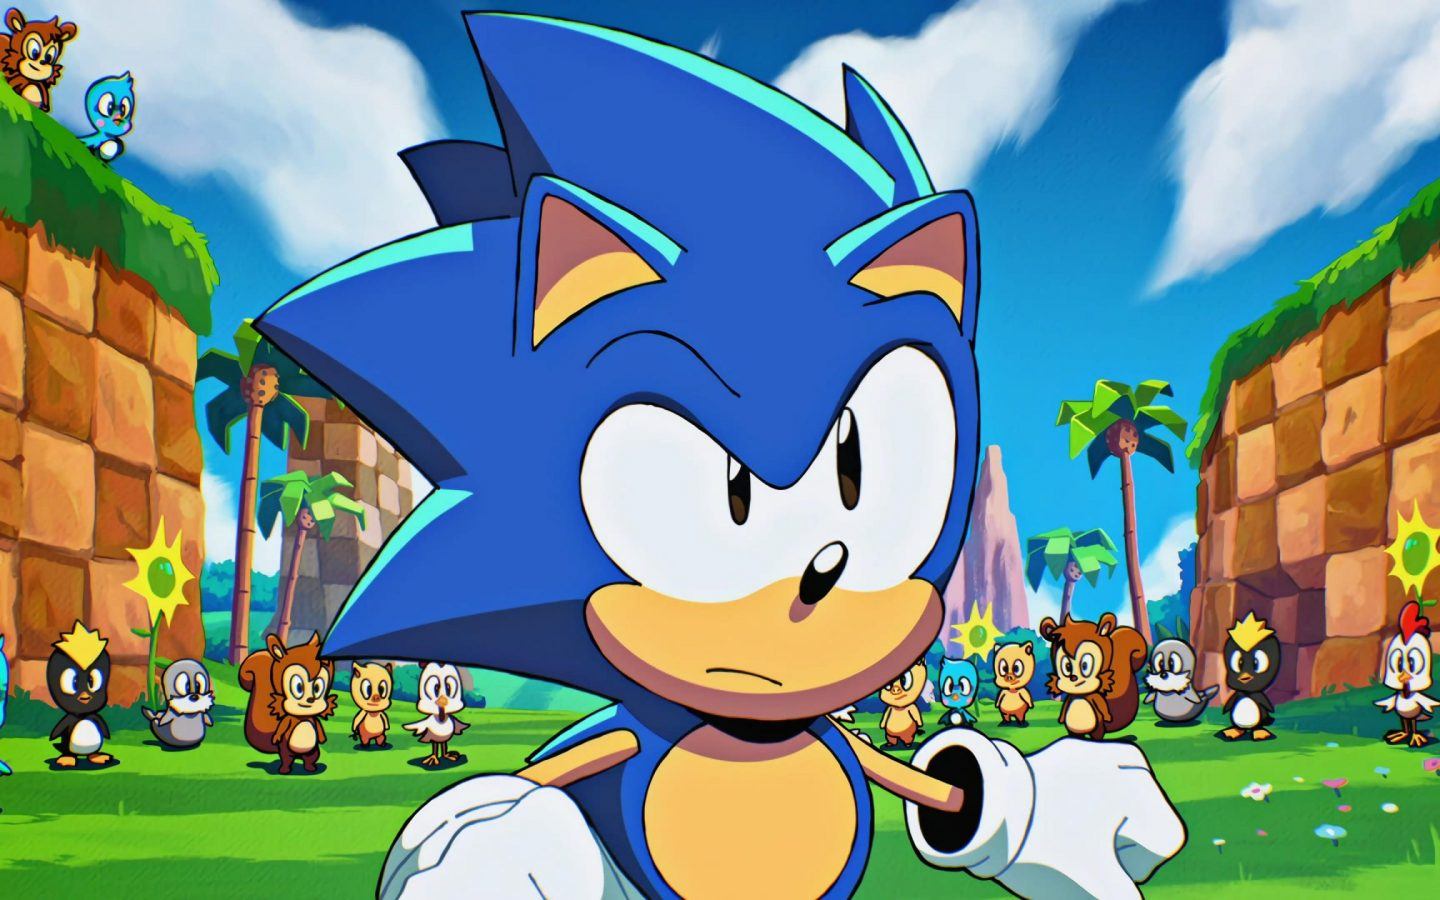 Sonic Origins Plus: tudo sobre a expansão da coleção da SEGA